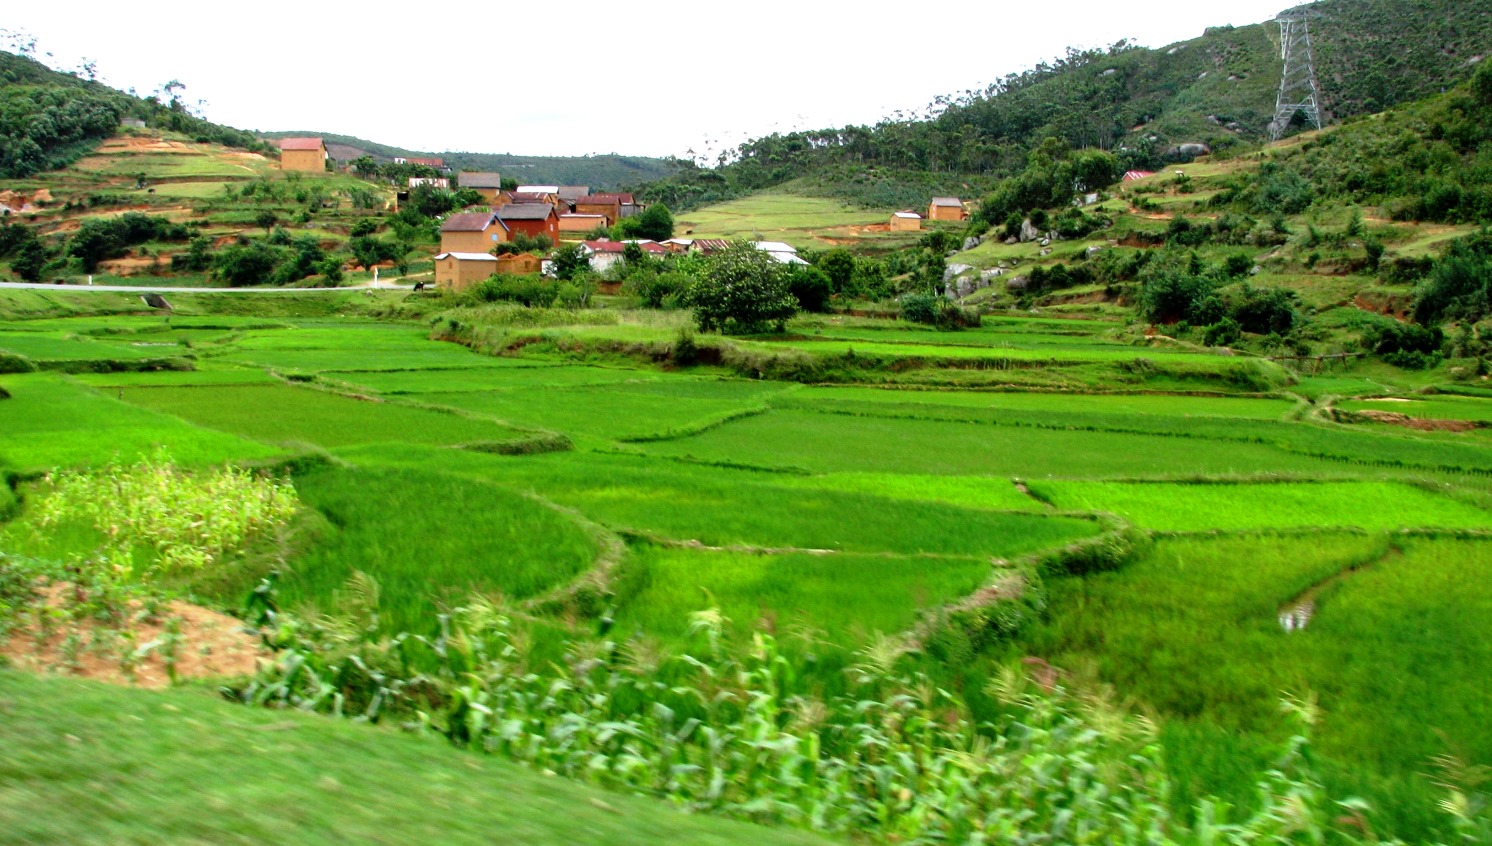 Rice paddy fields near Madagascar's